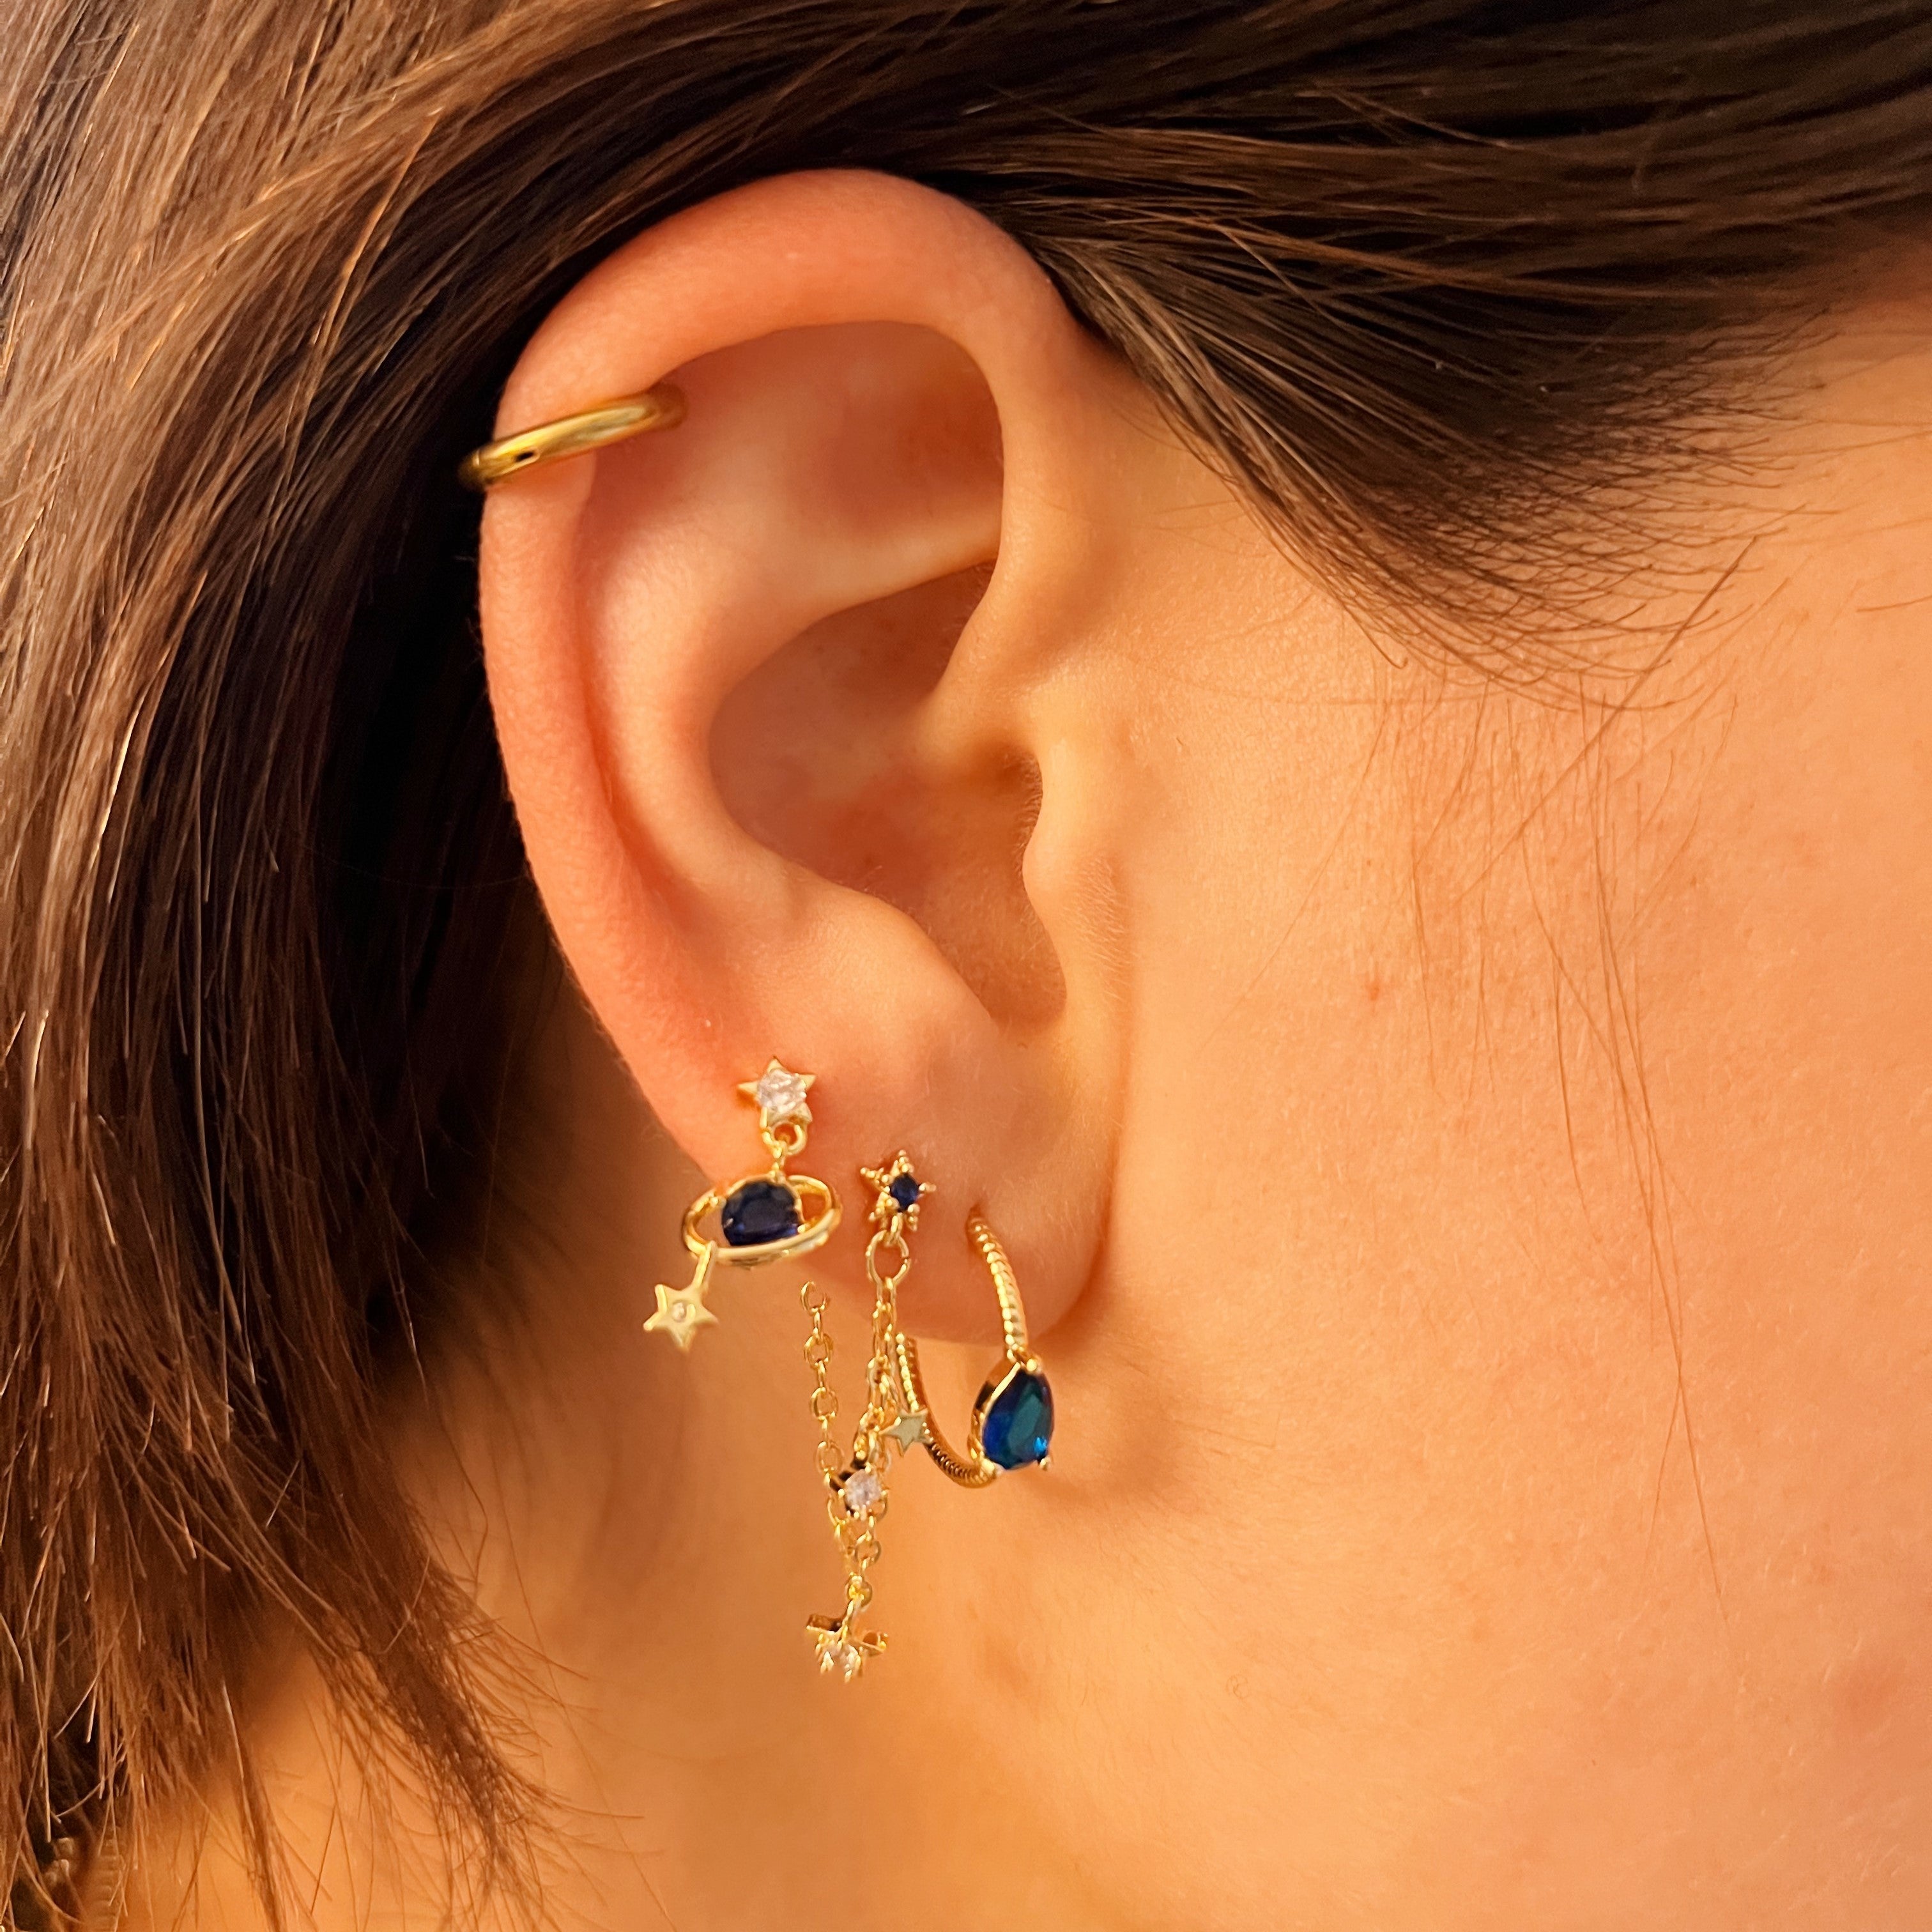 Earrings starry night blue